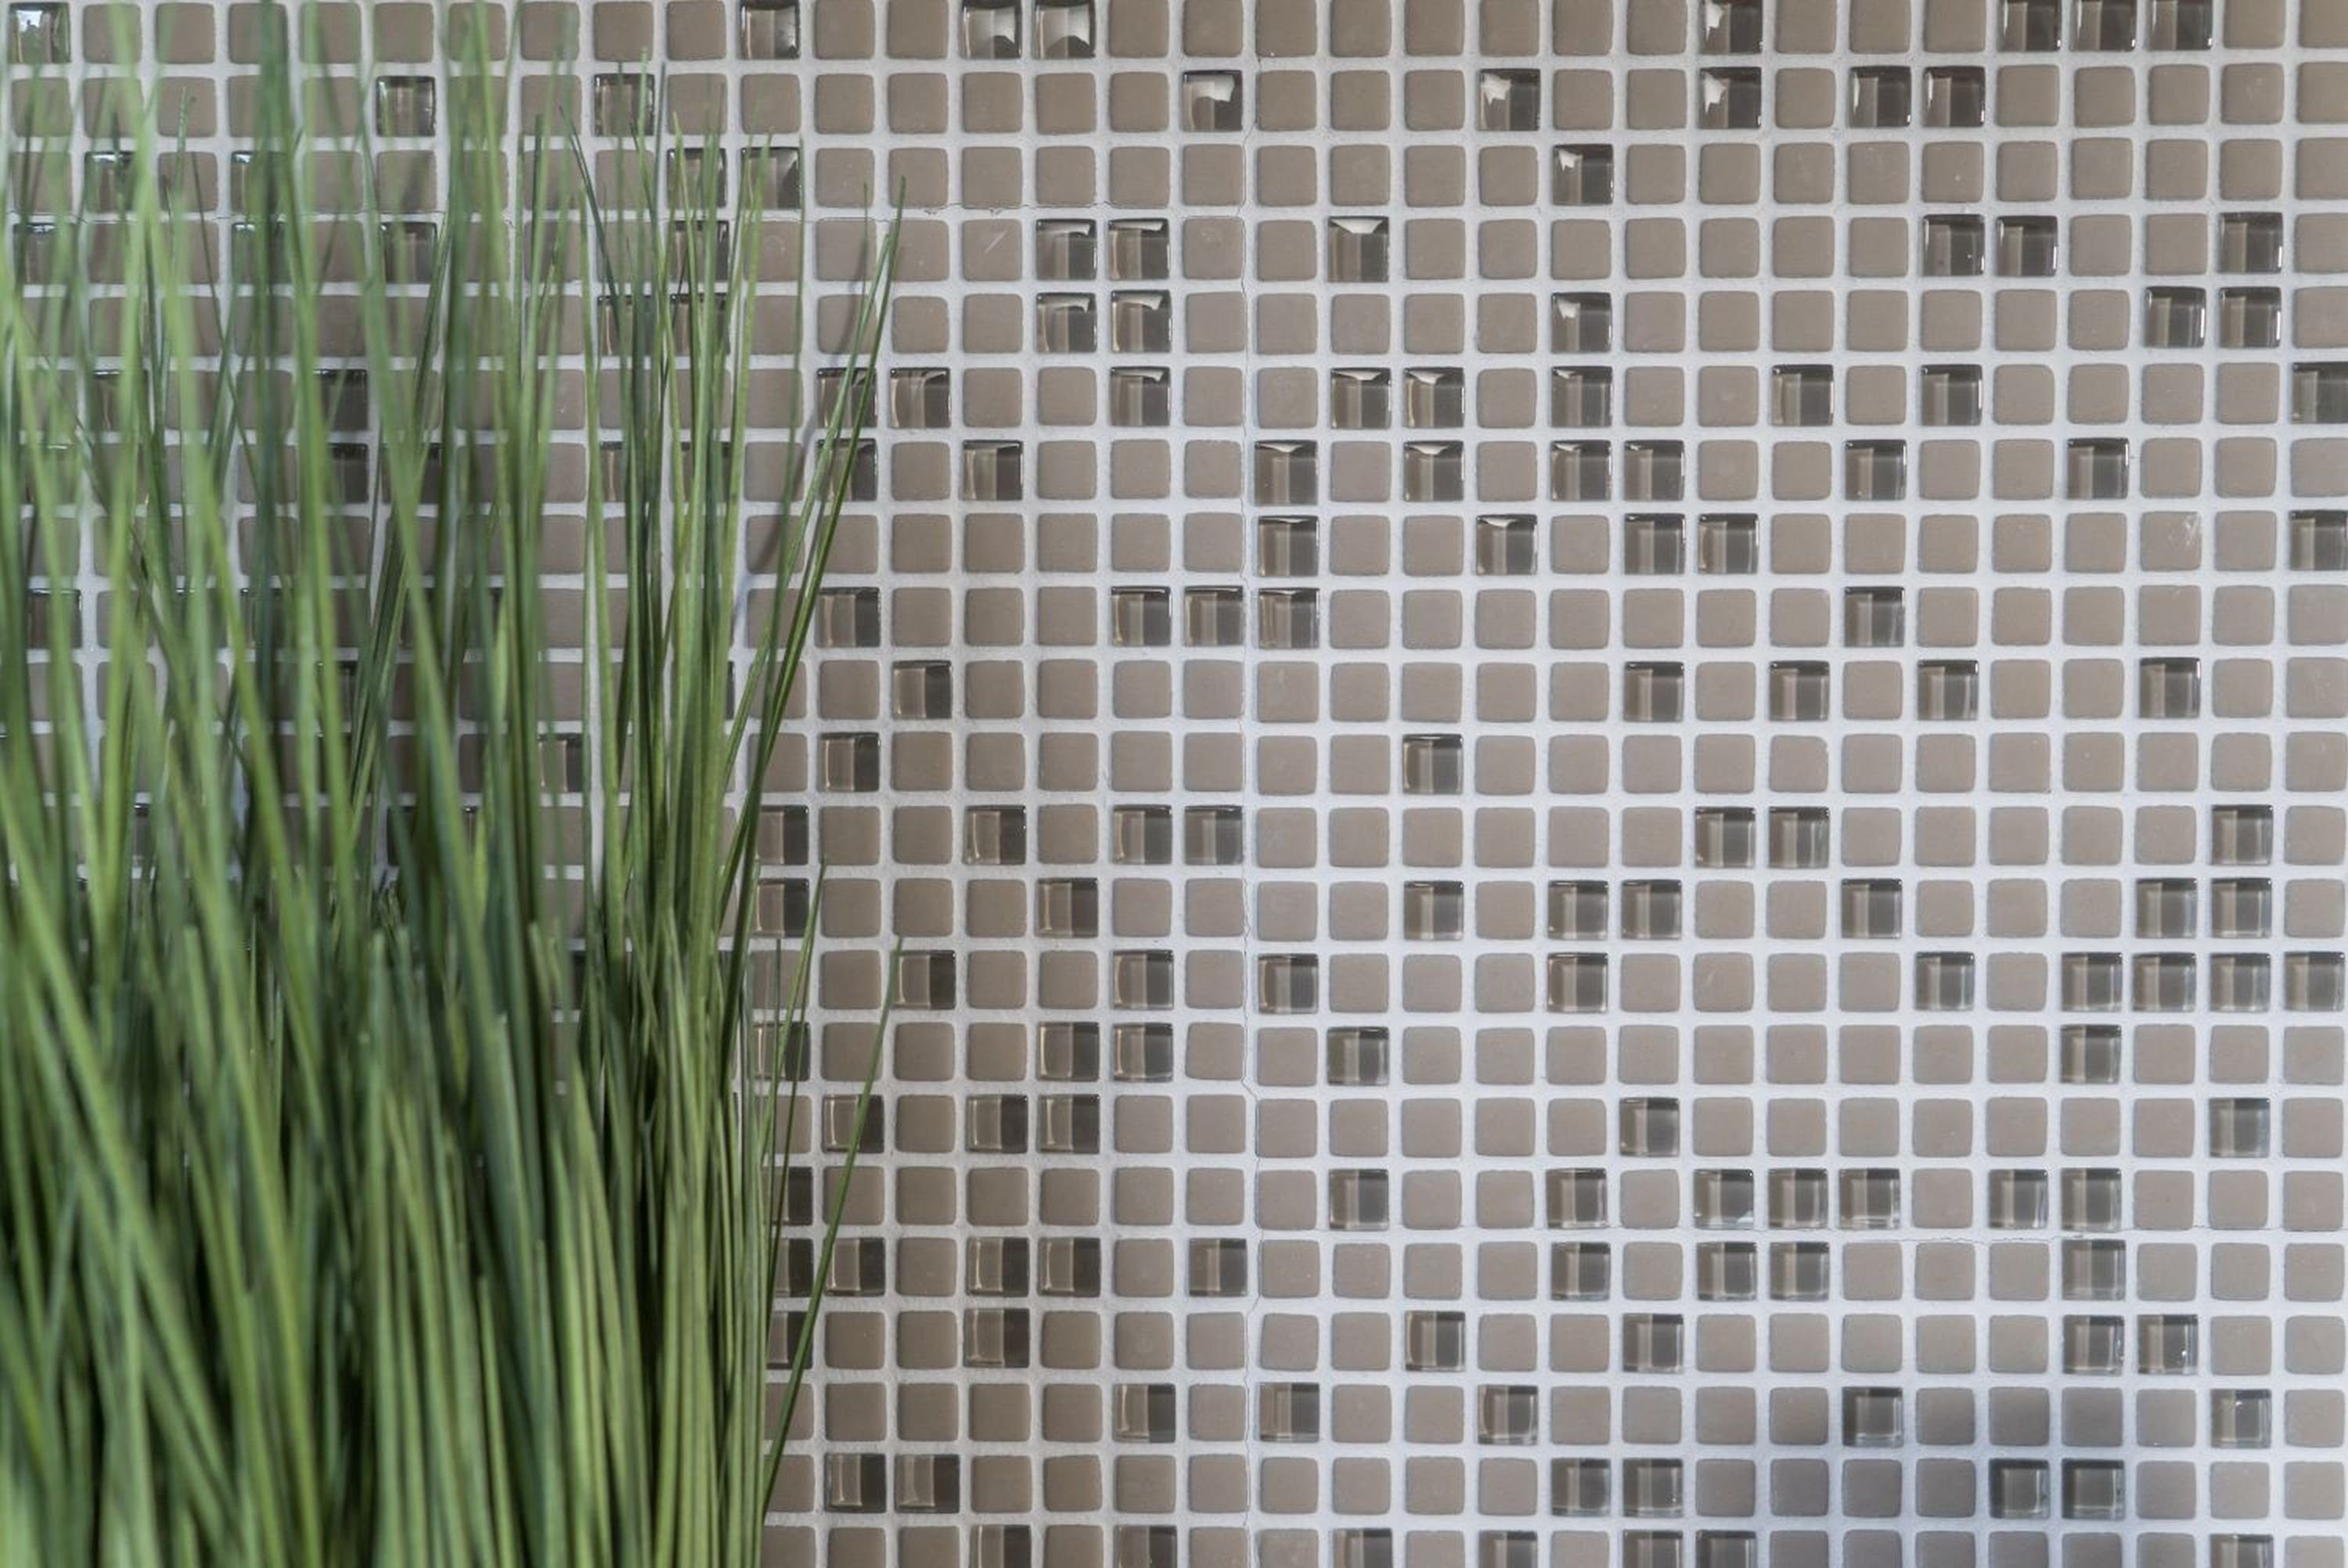 Mosani Mosaikfliesen Glasmosaik Nachhaltiger Wandbelag Recycling Enamel cream matt